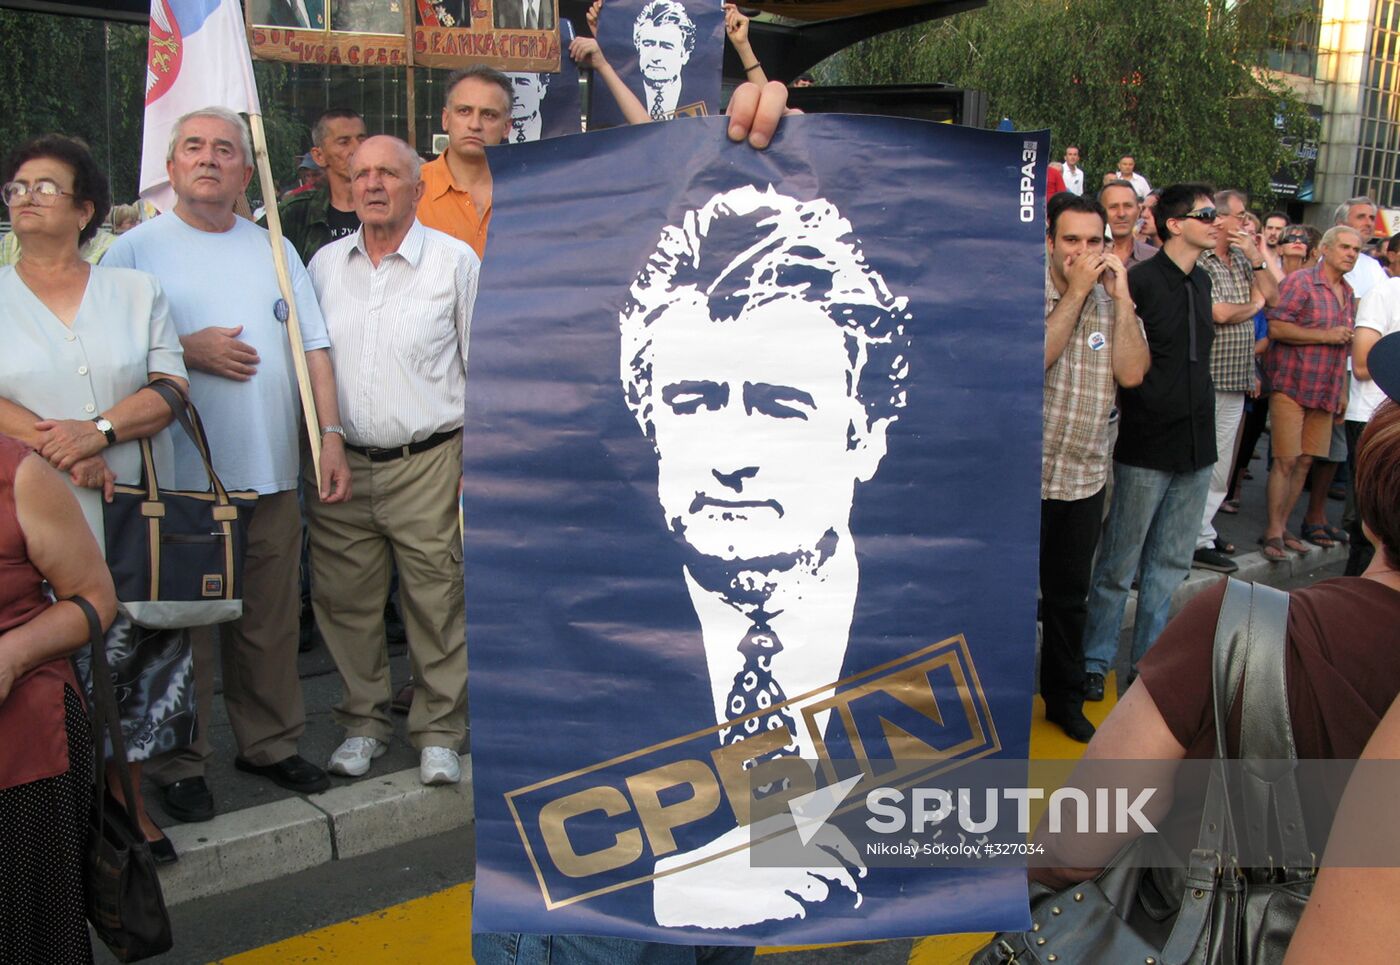 Rally in support of ex-Bosnian Serb leader Radovan Karadzi